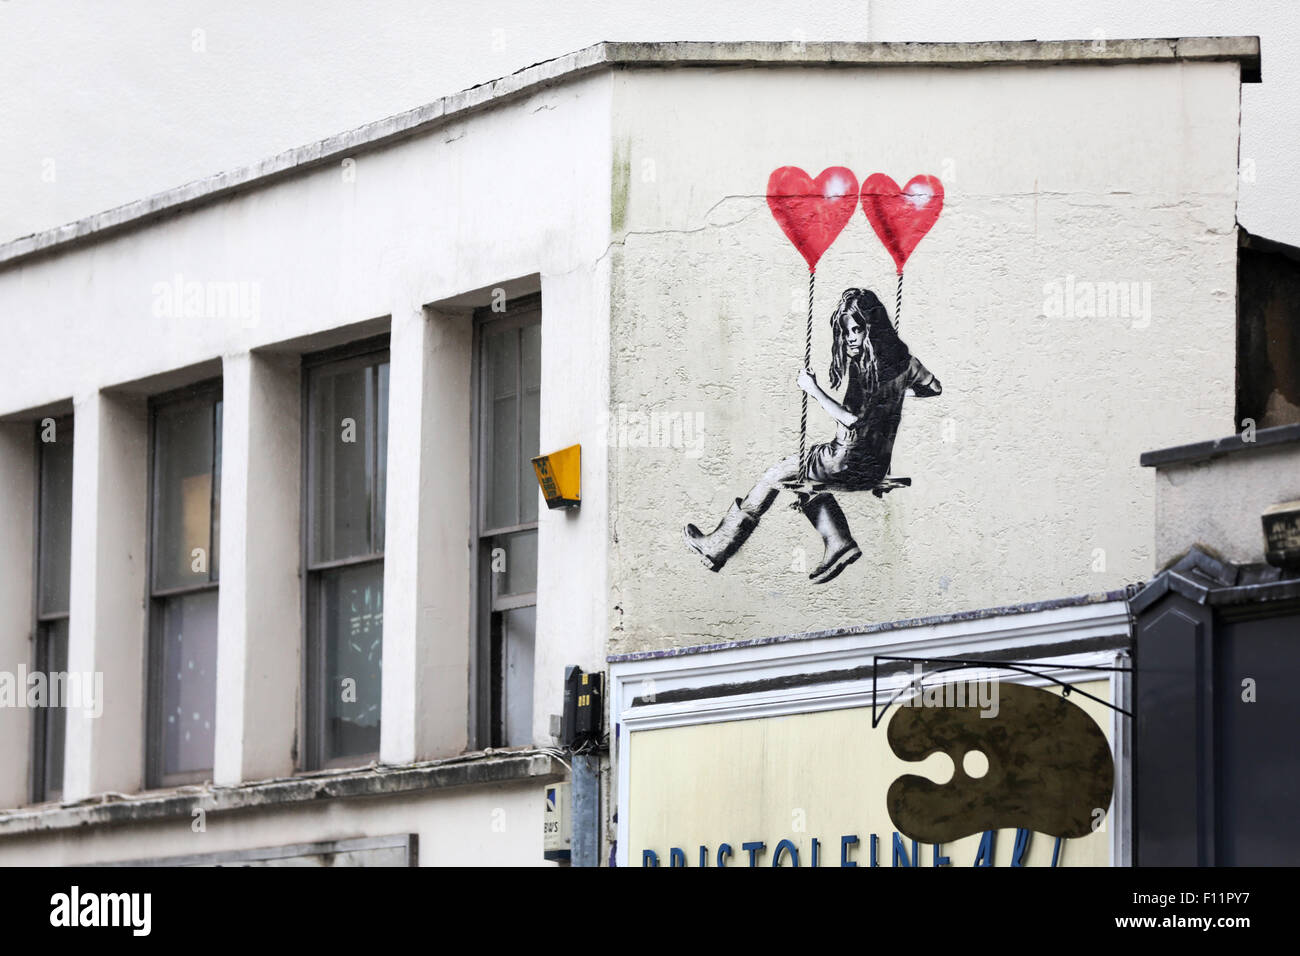 Street art, stile Banksy, a Park Row Bristol. L'immagine mostra una ragazza su un chiedere che è sospeso da due palloncini a forma di cuore. L'artista è jps Foto Stock